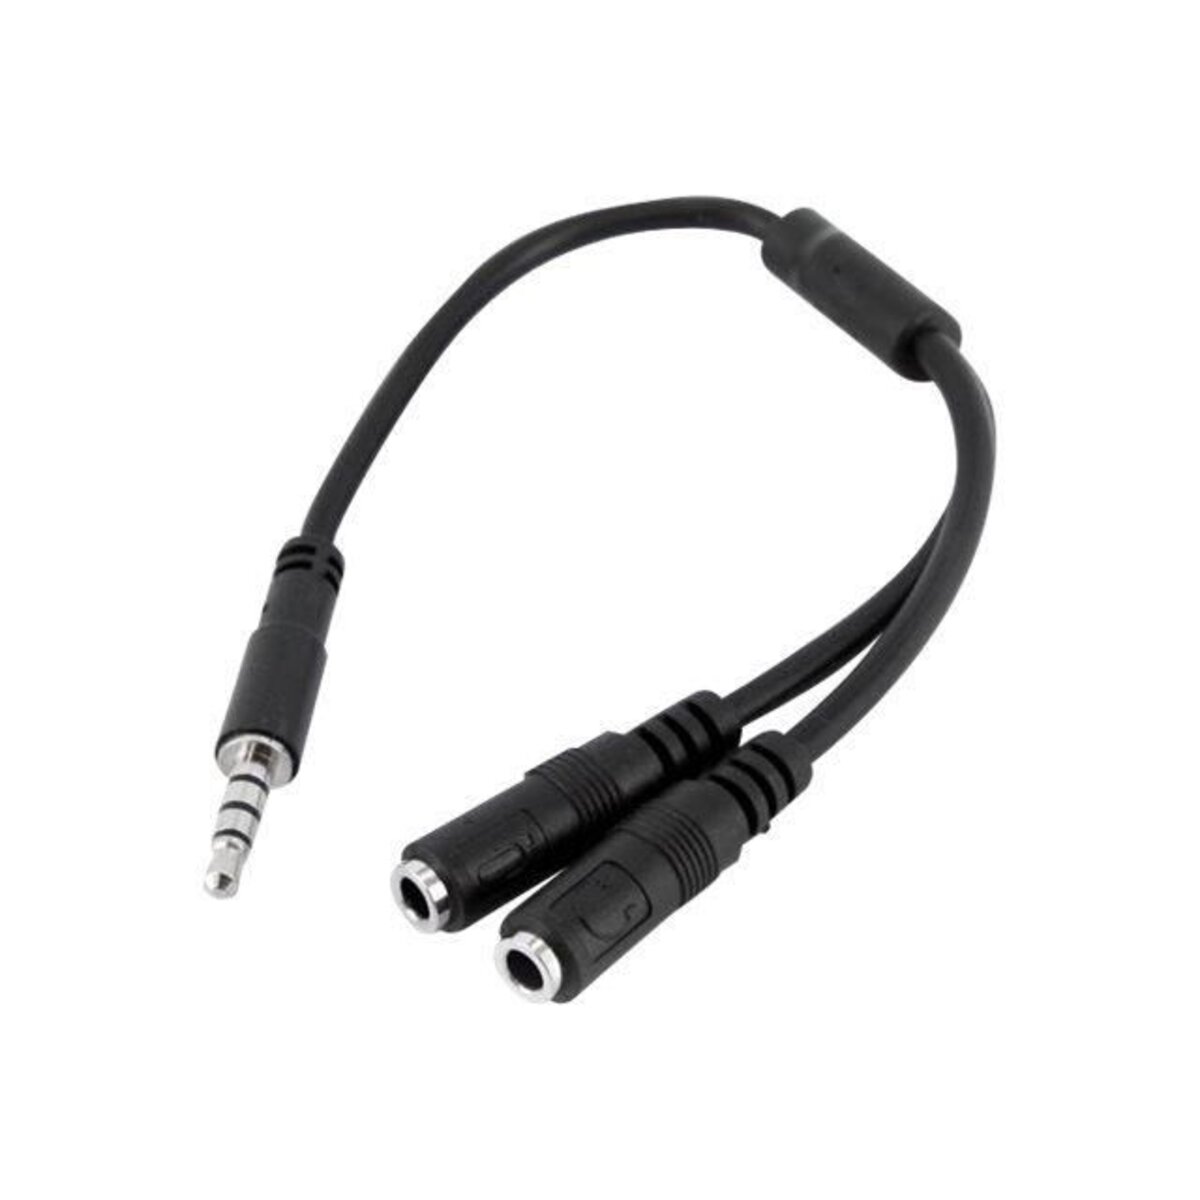 StarTech.com Adaptateur pour casque avec prises écouteur et micro séparées  mini jack 3.5 mm M/F - Adaptateur audio - Garantie 3 ans LDLC